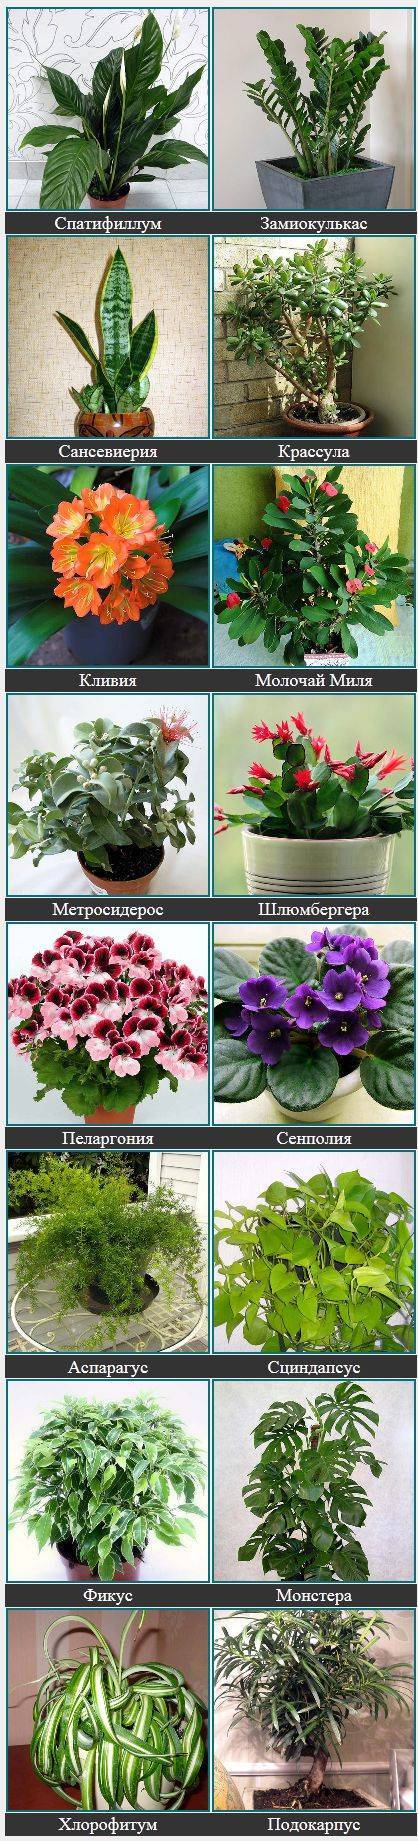 ???? комнатные домашние растения и цветы: фото и названия, разновидности